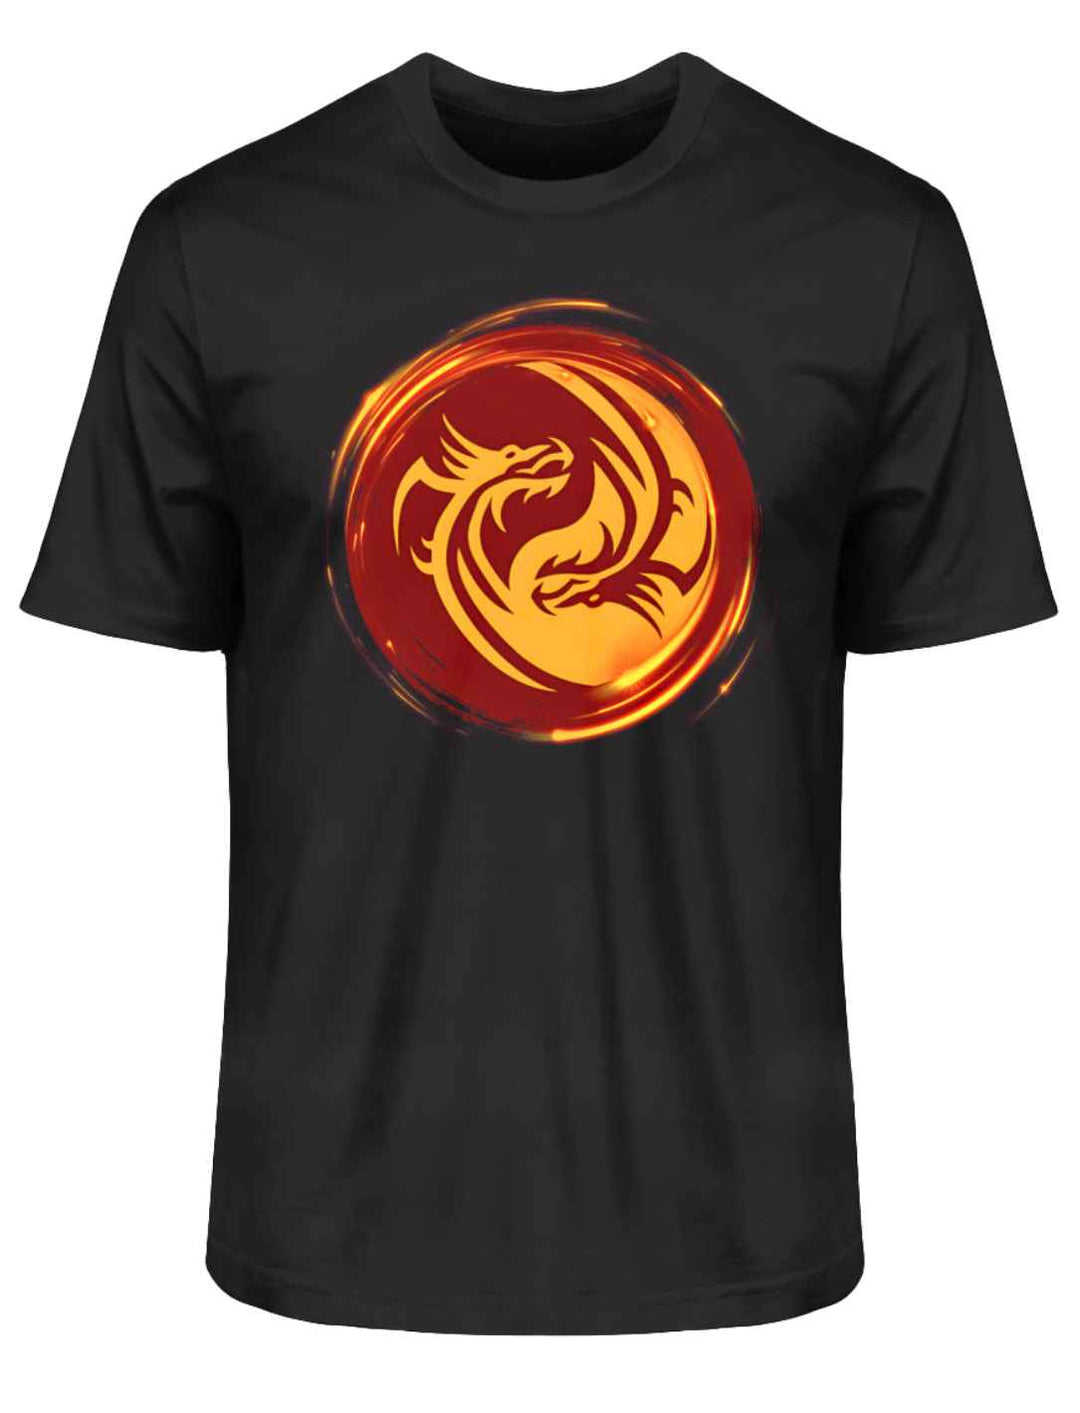 T-Shirt in Schwarz mit "Drachensturm der Macht" Design, ein Symbol für urtümliche Kraft und mythische Eleganz, auf weißem Hintergrund.